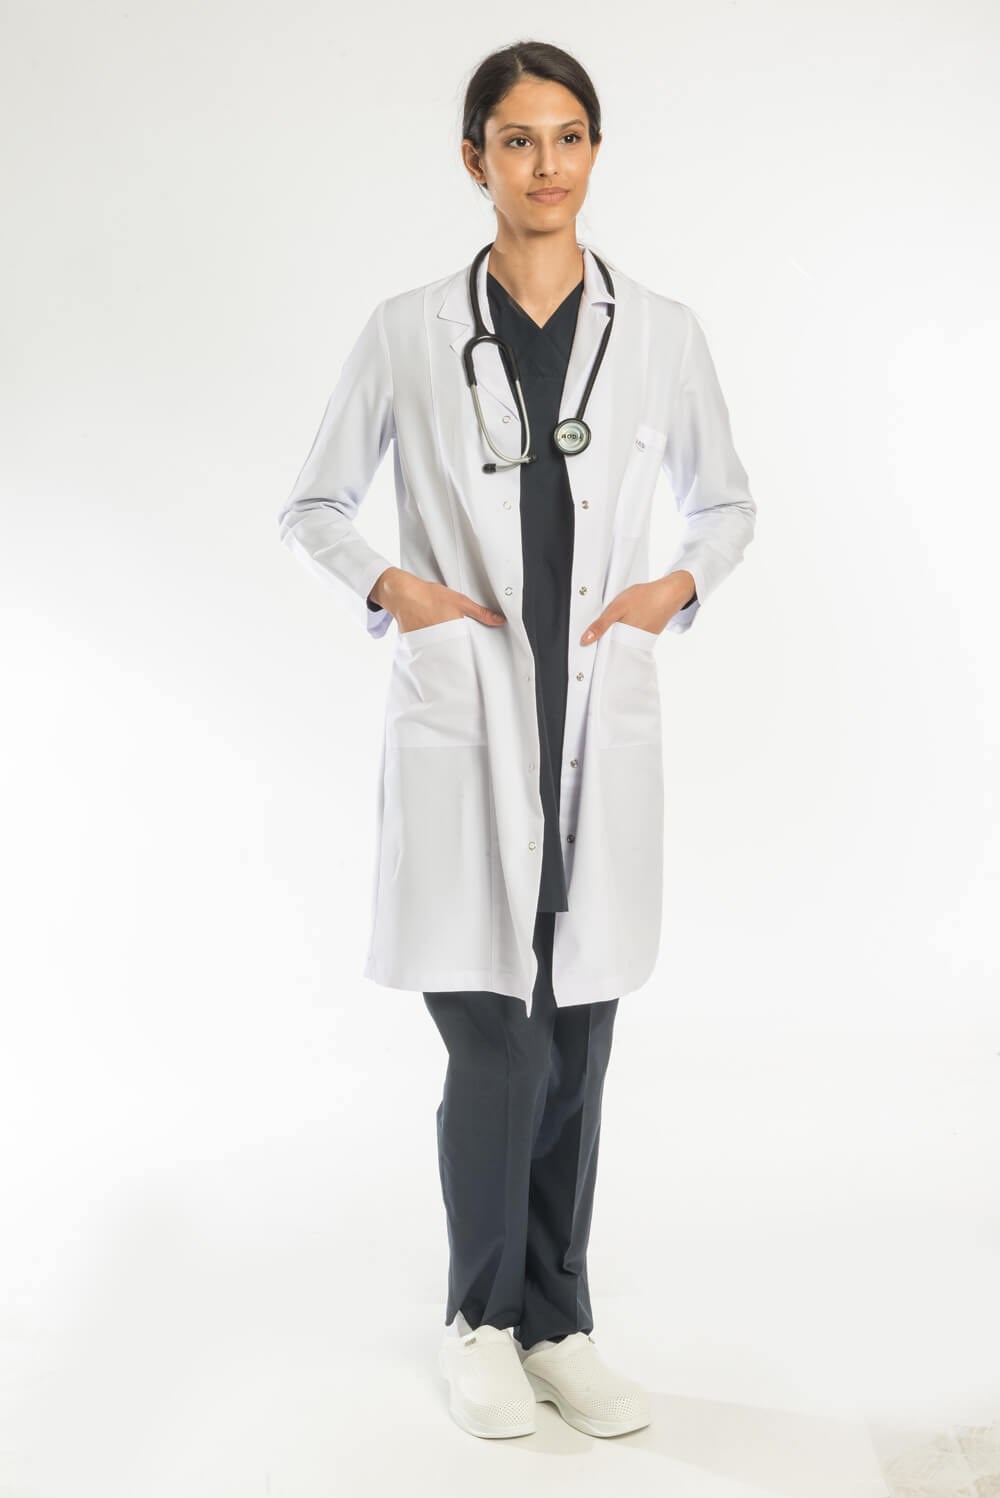 Bayan Doktor Önlüğü | Klasik Yaka Uzun Boy Doktor Önlük | ASFORMA®